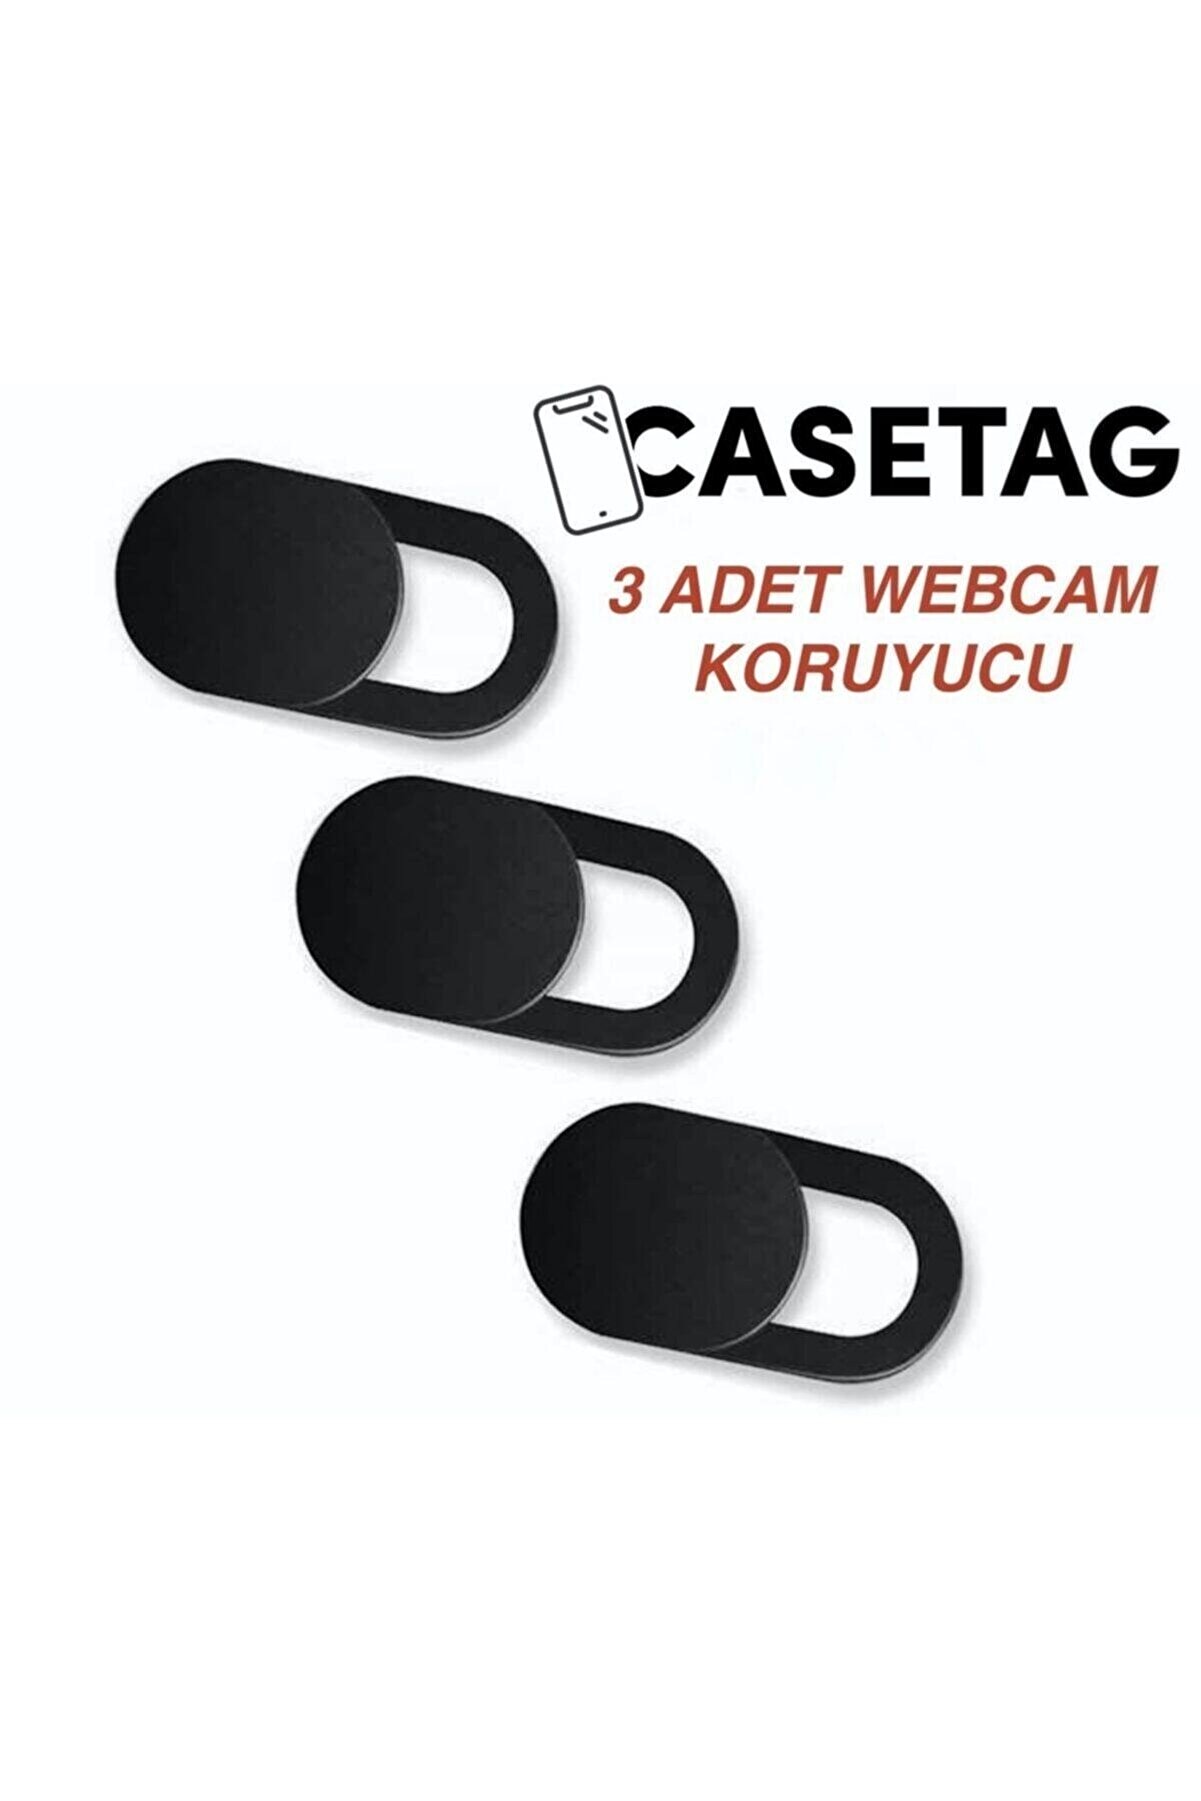 CASETAG TÜRKİYE Webcam Koruyucu